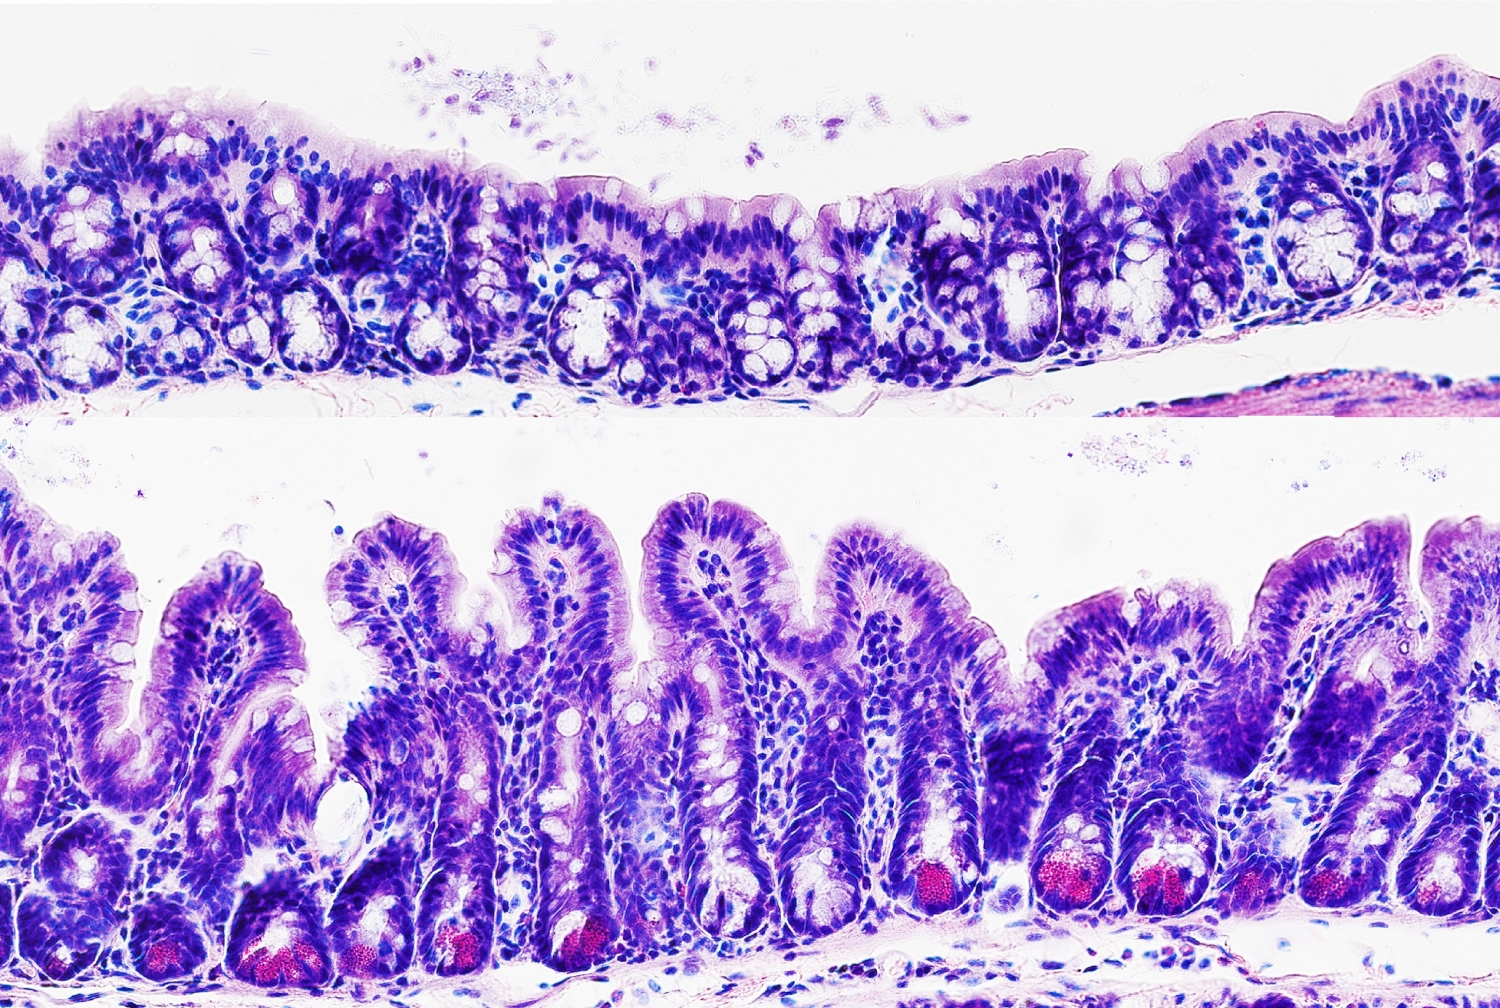 a microscopic image of colon